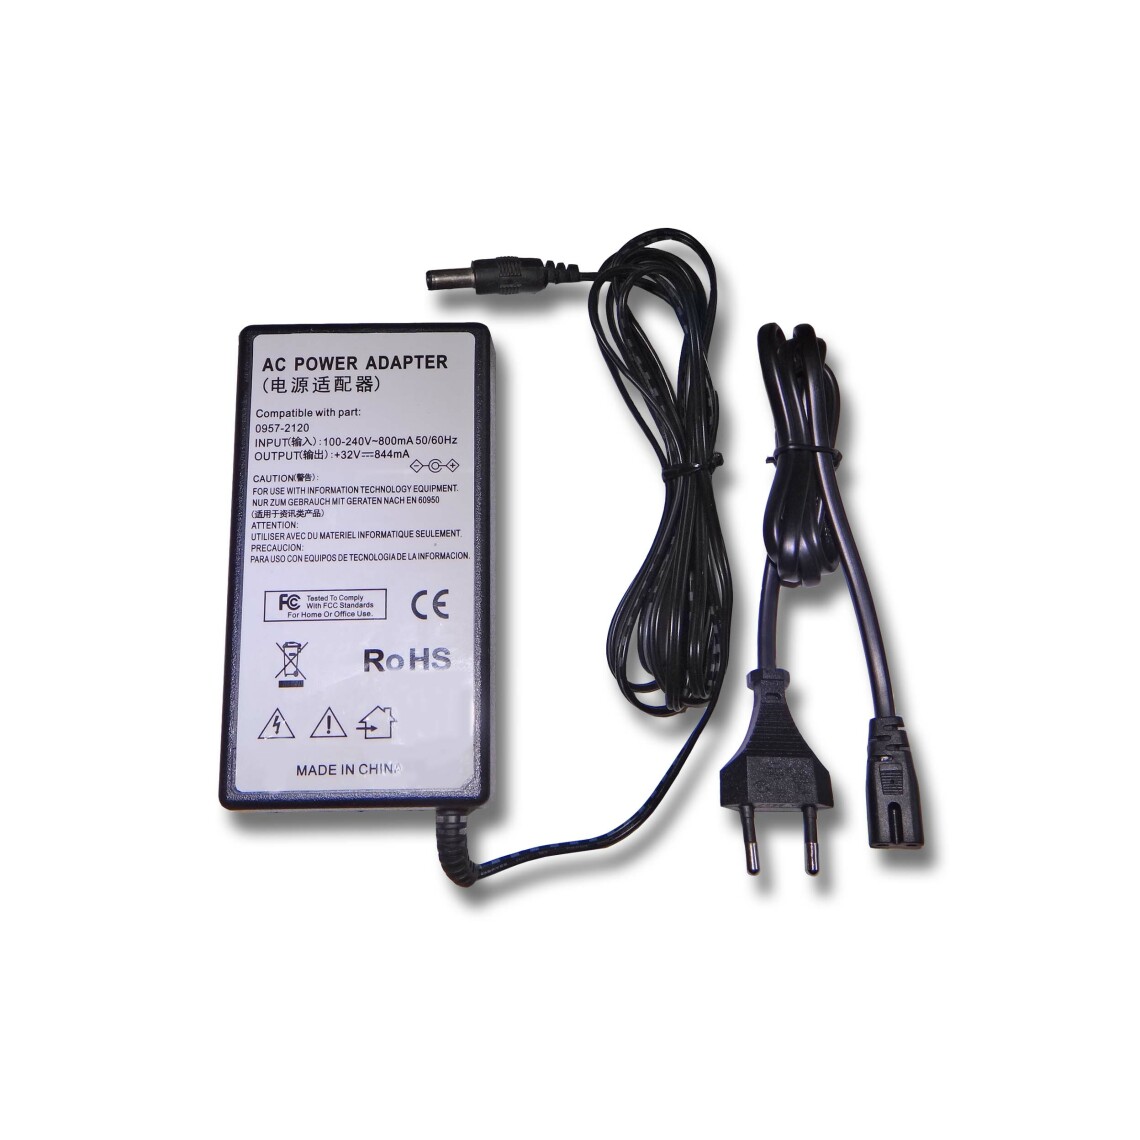 Vhbw - vhbw Imprimante Adaptateur bloc d'alimentation Câble d'alimentation Chargeur compatible avec HP Photosmart A310, A432, A433, A434 imprimante - 0.844A - Accessoires alimentation